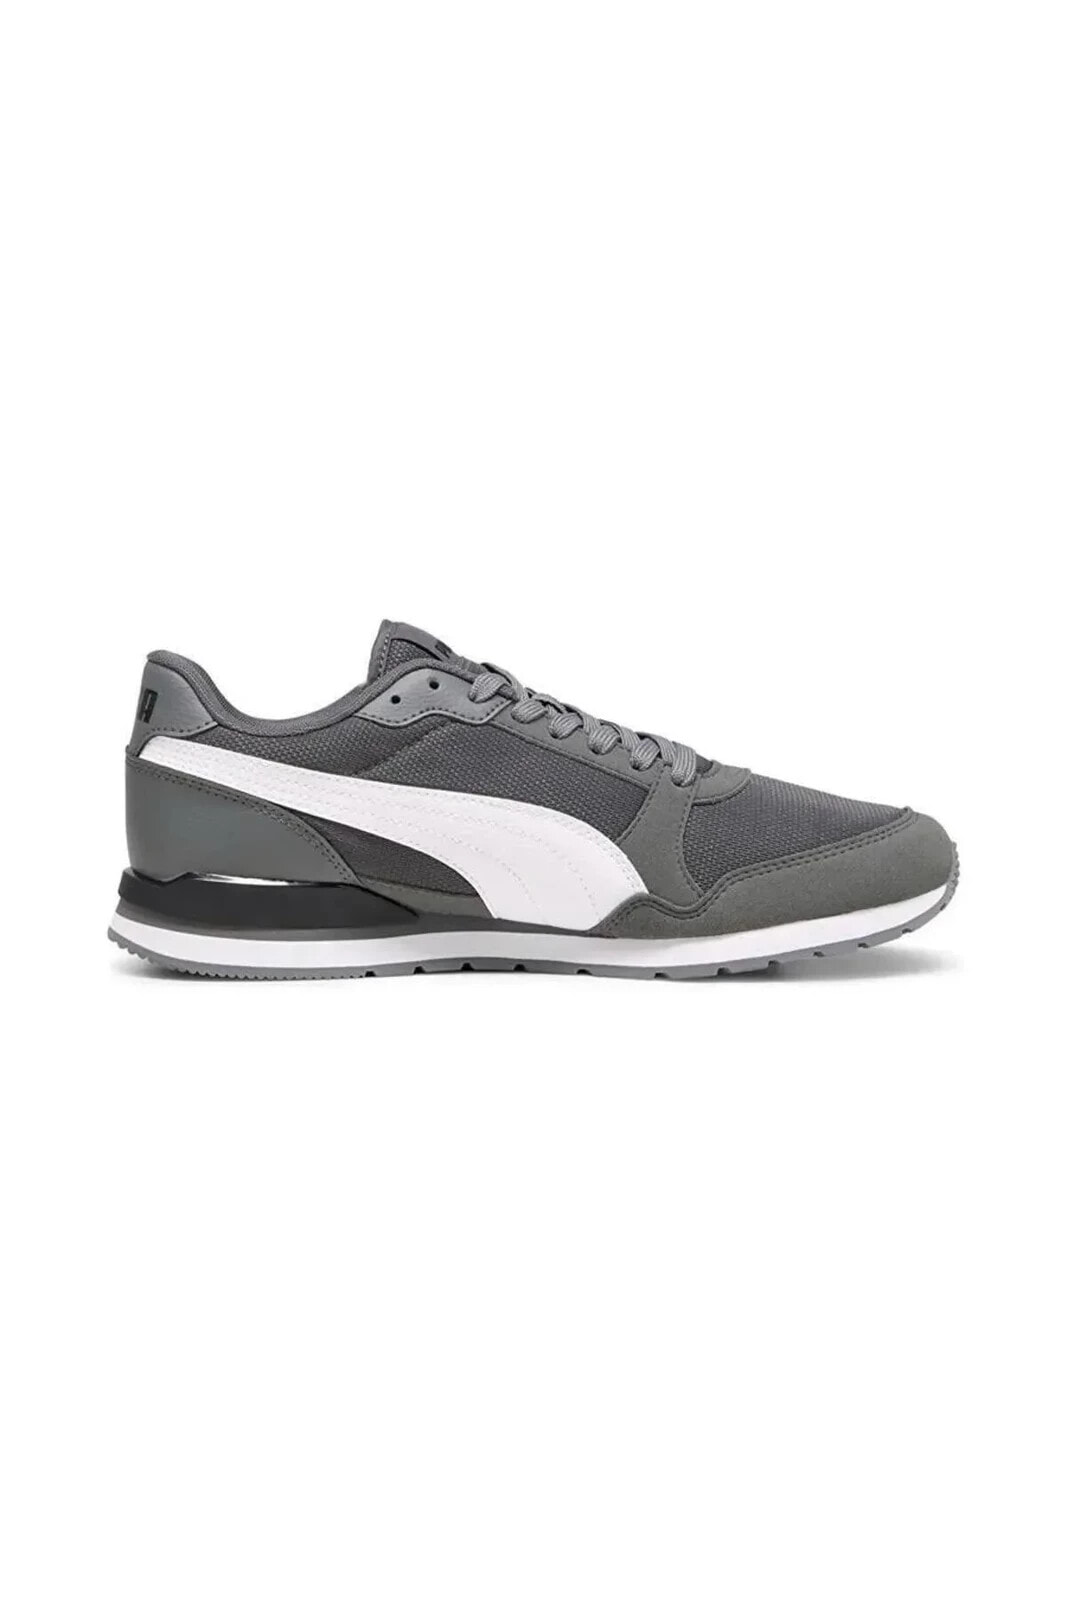 Erkek Günlük Sneaker Ayakkabı St Runner V3 Mesh Cool Dark Gray- Wh 38464014